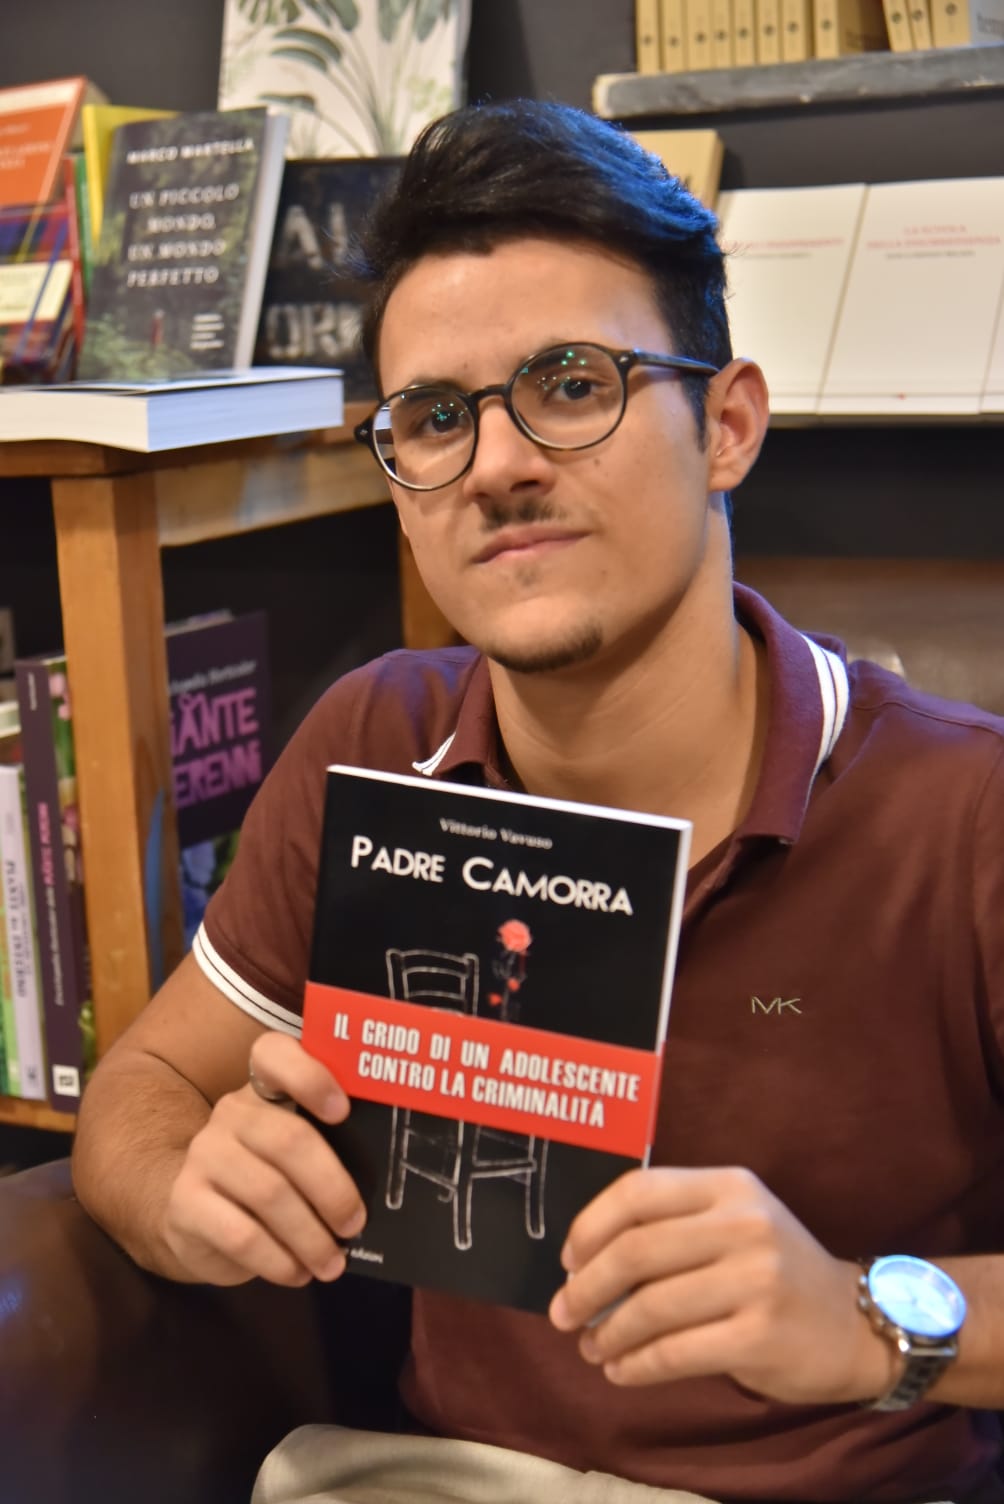 ‘Padre camorra’: grande successo a Pontedera per il giovanissimo scrittore salernitano Vittorio Vavuso